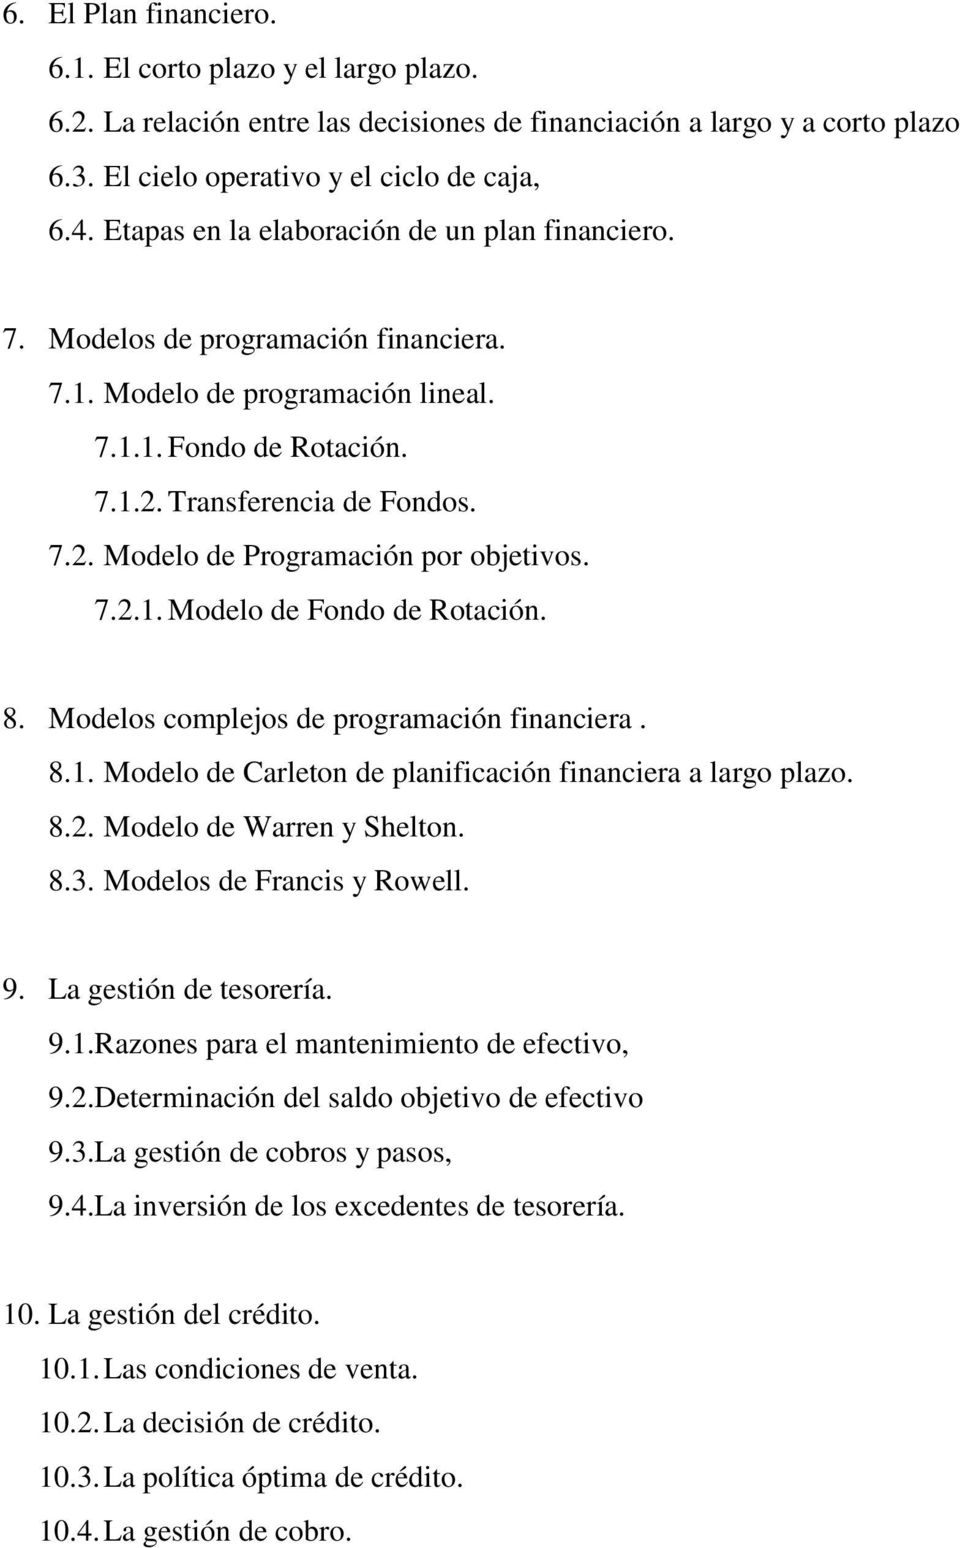 7.2.1. Modelo de Fondo de Rotación. 8. Modelos complejos de programación financiera. 8.1. Modelo de Carleton de planificación financiera a largo plazo. 8.2. Modelo de Warren y Shelton. 8.3.